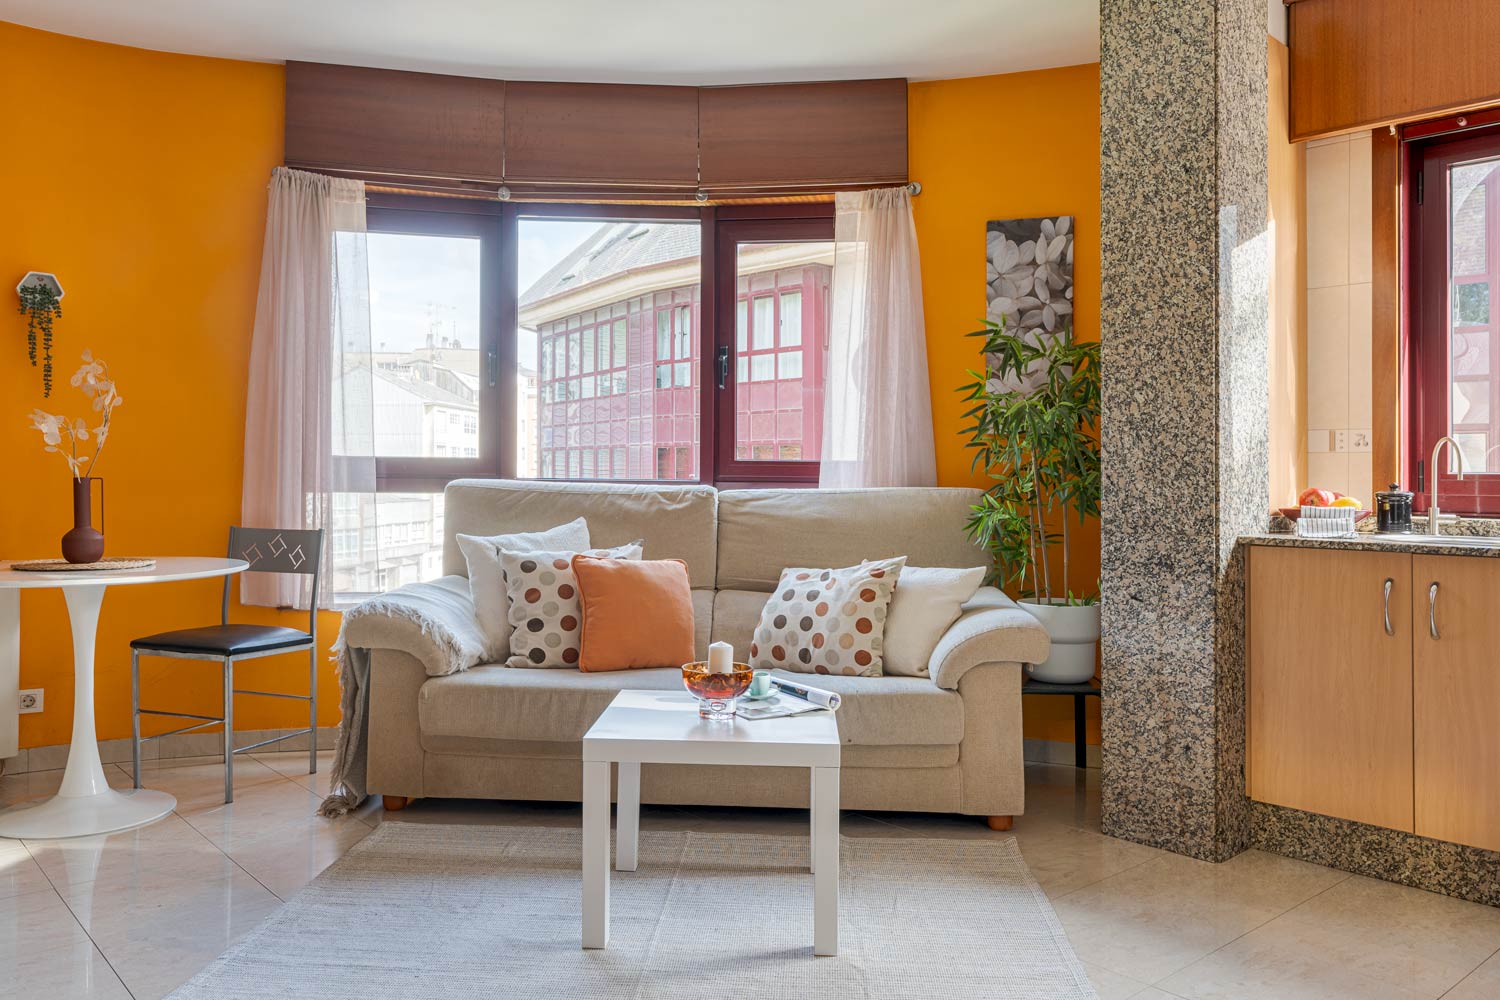 Sala de estar luminosa con un sofá en forma de L de color beige, una mesa de centro rectangular de madera con adornos y dos sillas tapizadas de color crema